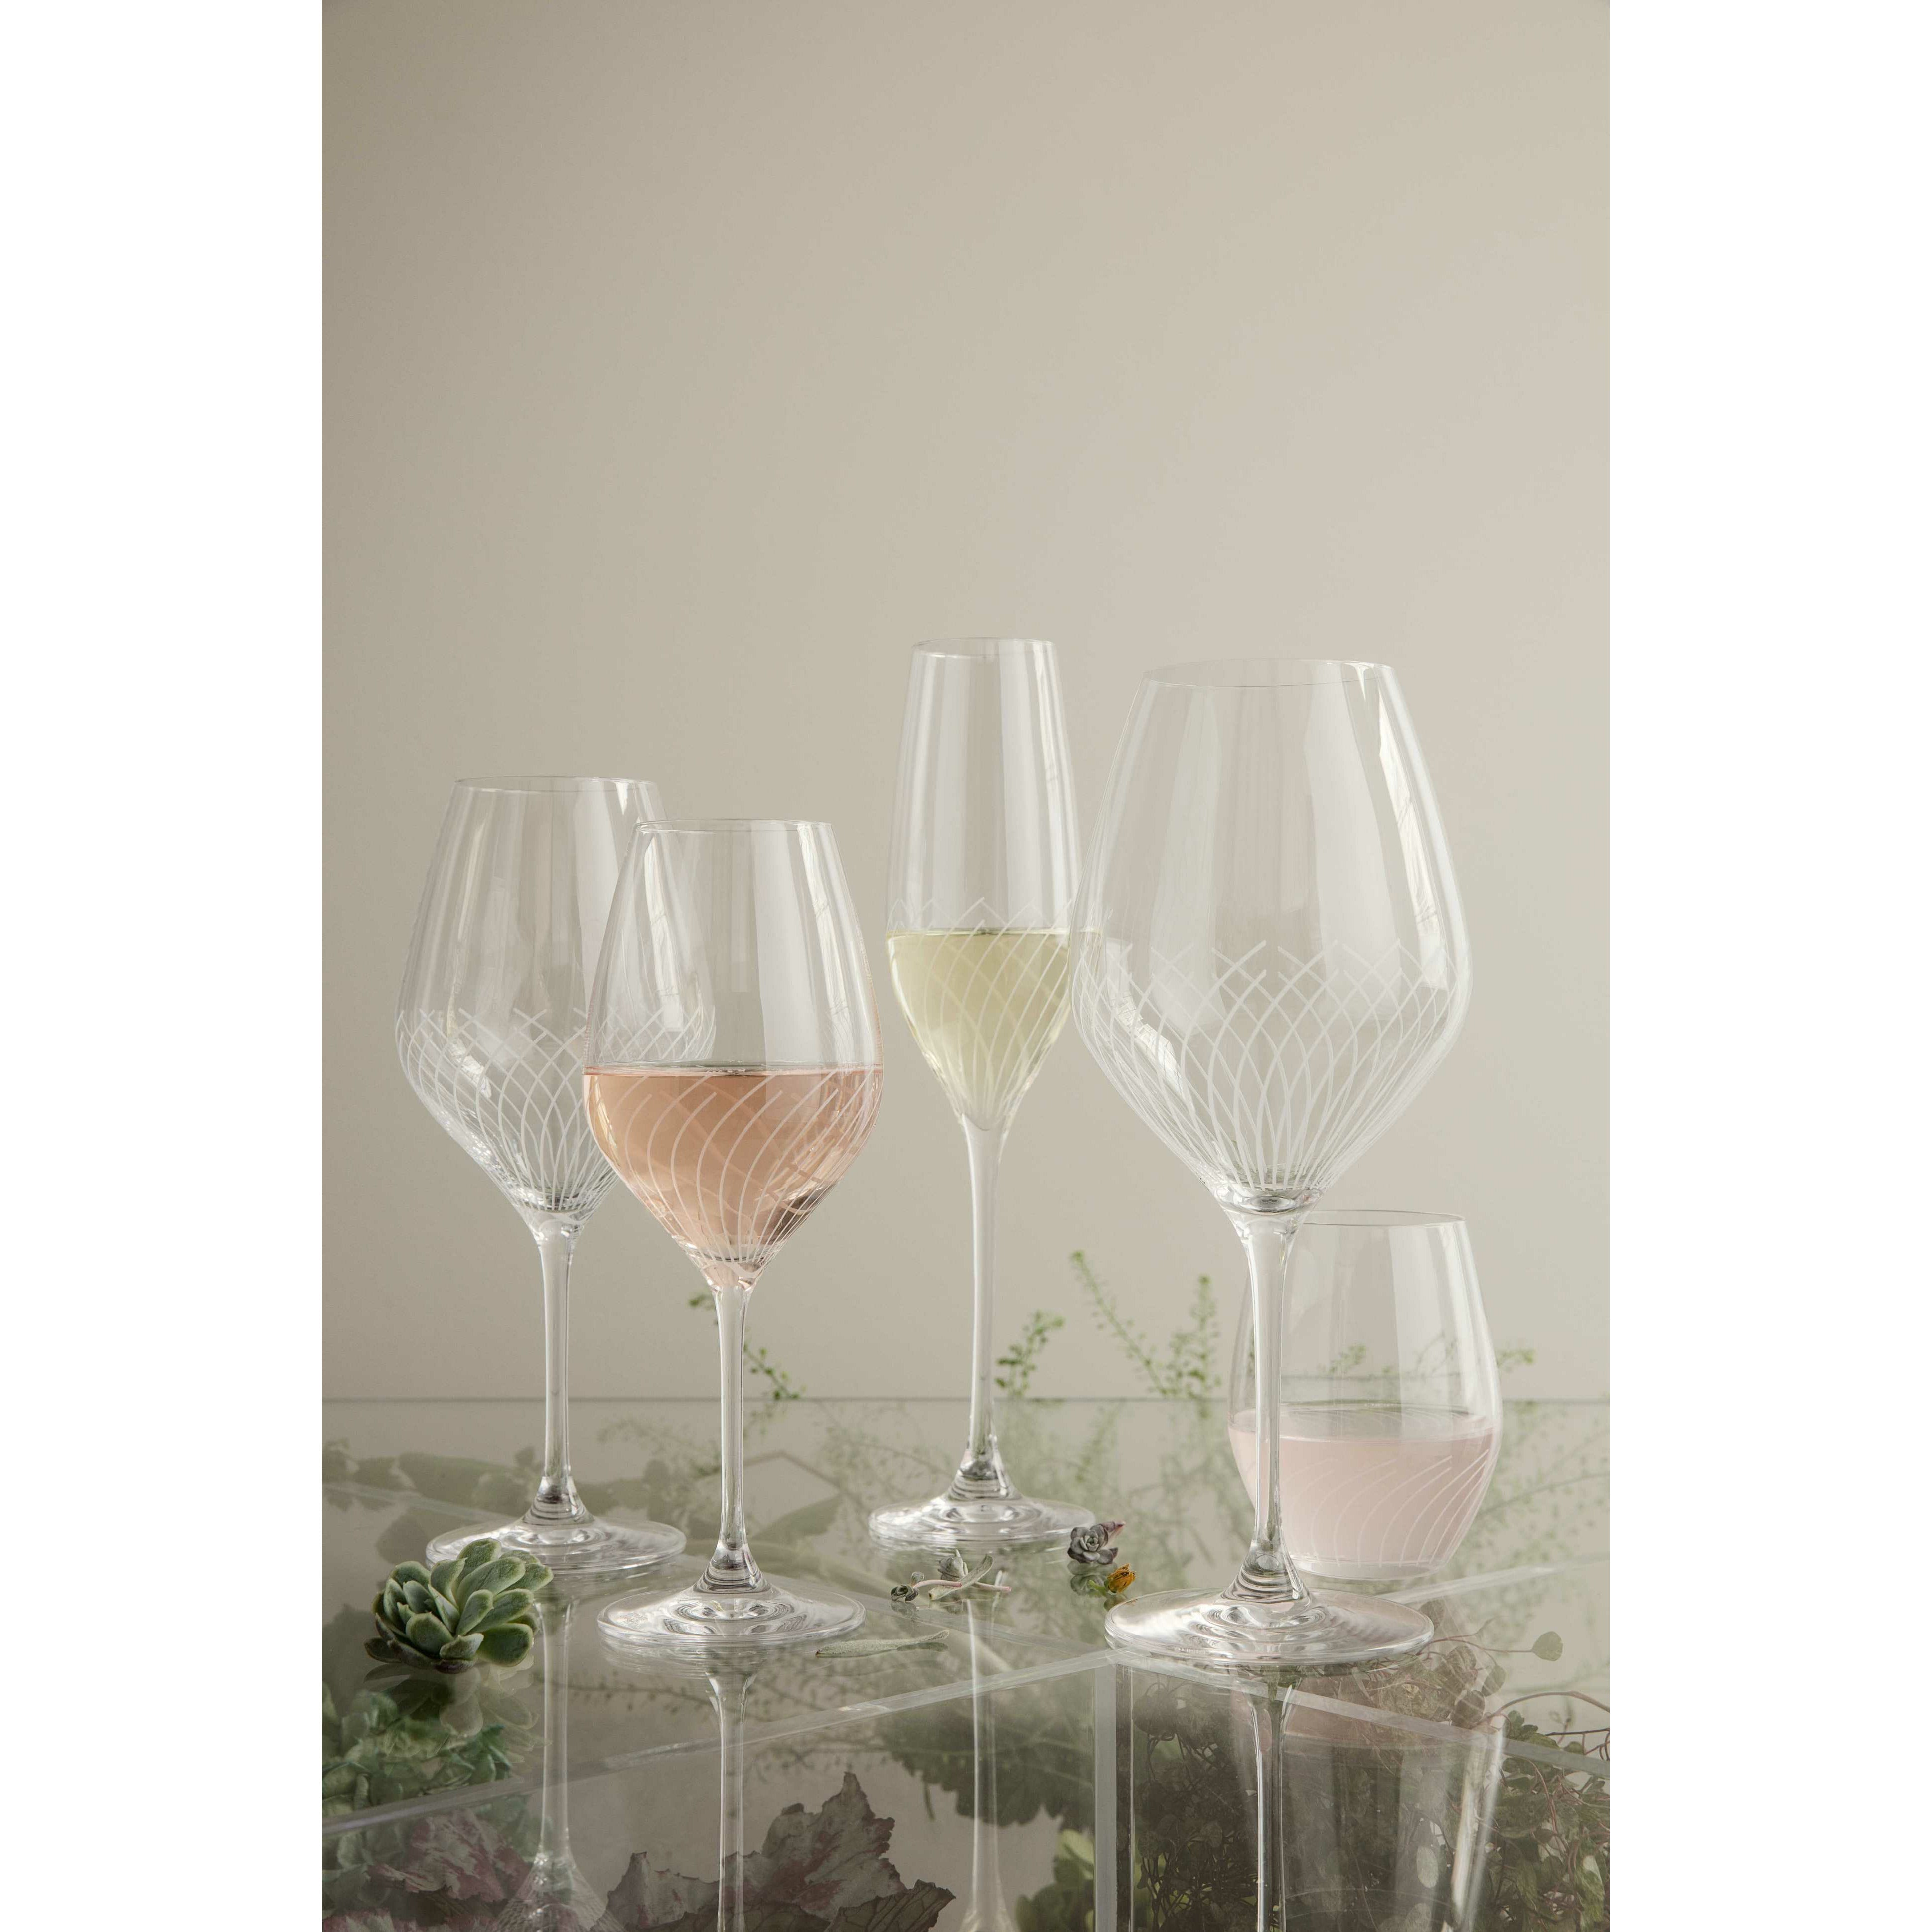 Holmegaard Cabernet Line Champagne Glass, 2 pcs.